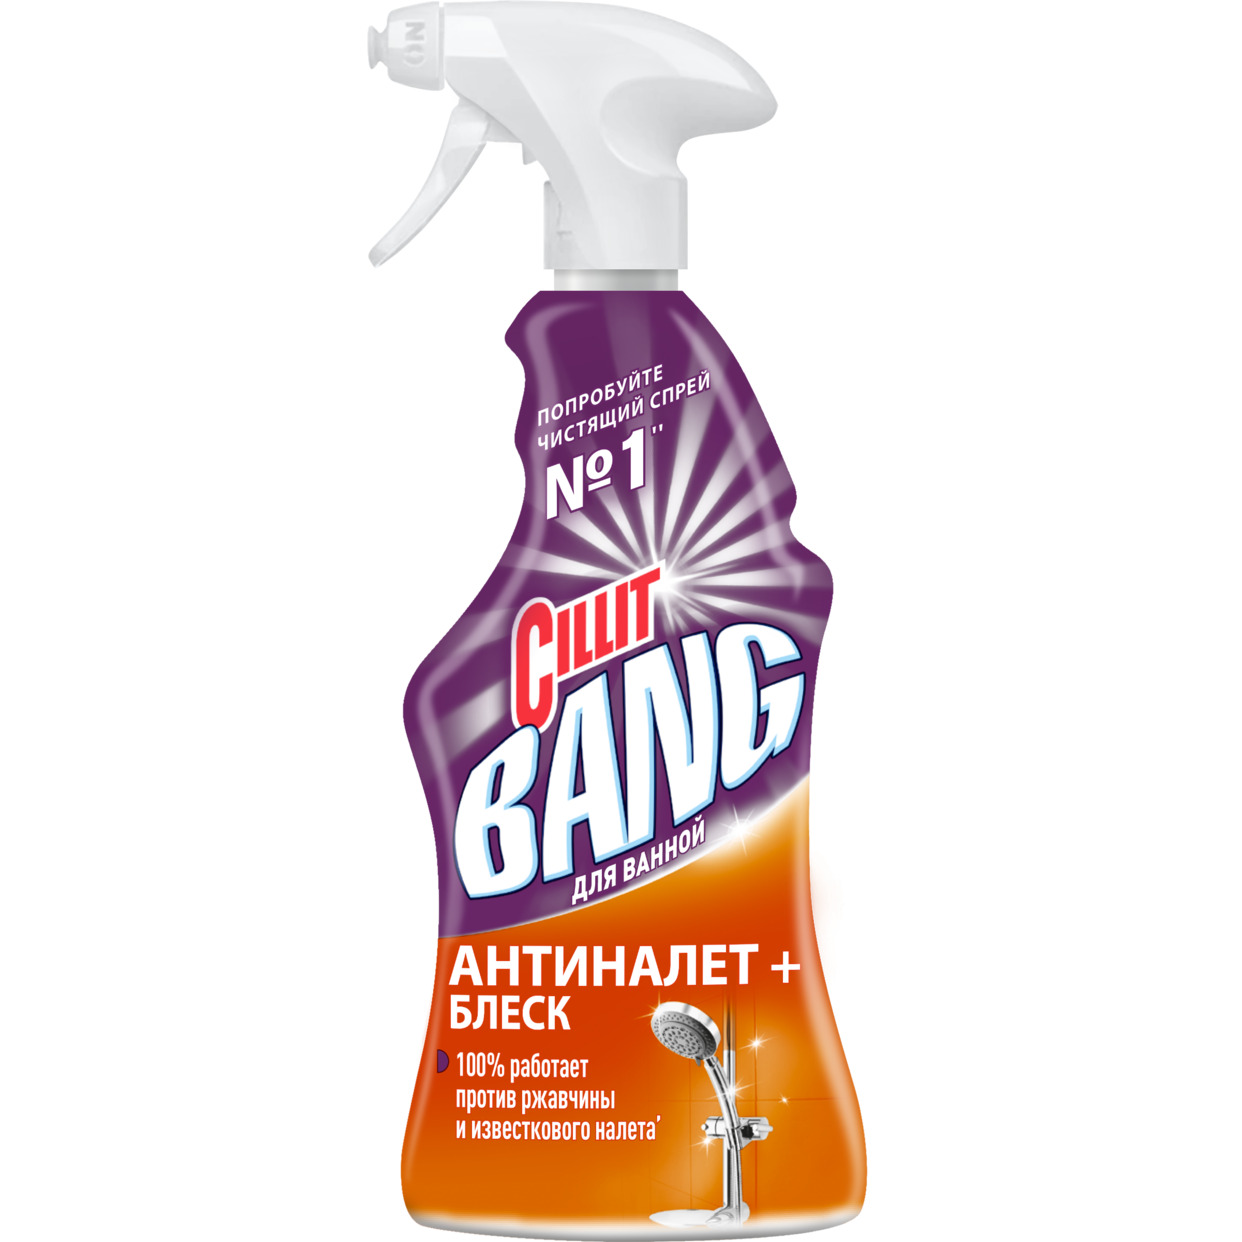 Мощное чистящее средство Cillit Bang антиНалет+Блеск, 450мл